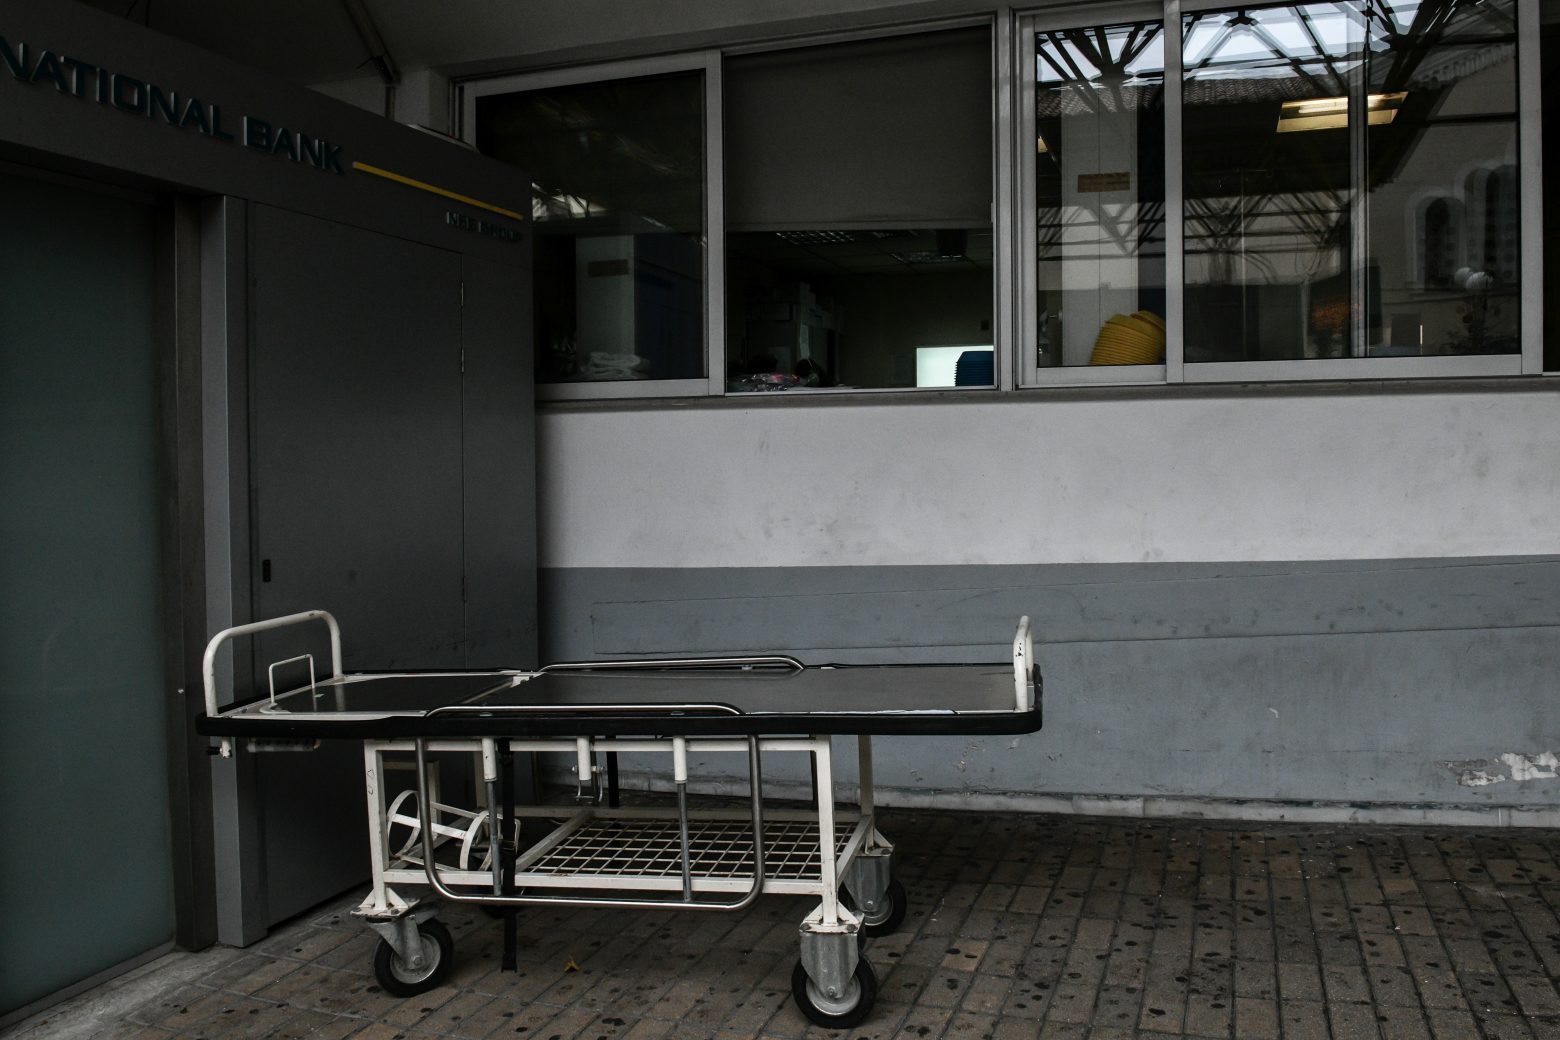 Χαλκιδική - ΕΔΕ για πλαστά πιστοποιητικά νόσησης στο Νοσοκομείο Πολυγύρου - Πώς επιχείρησαν να ξεγελάσουν